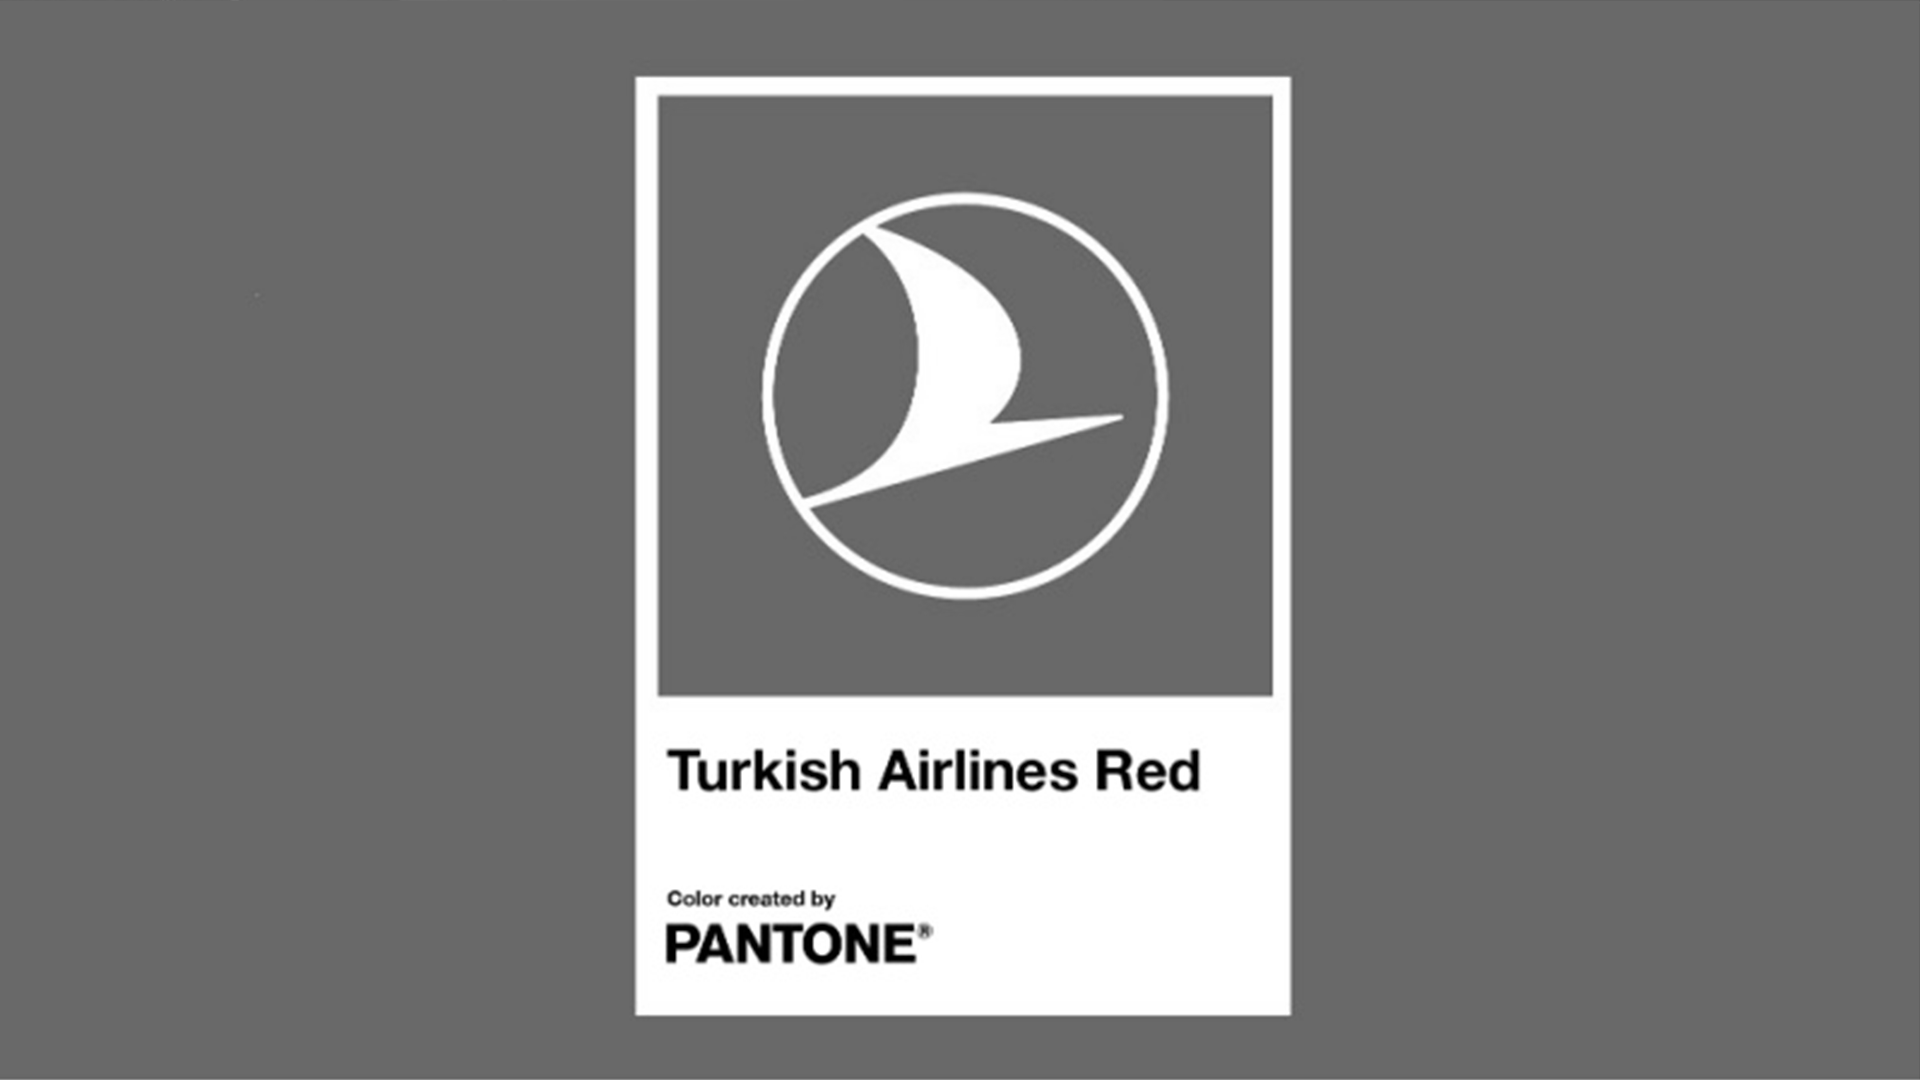 THY, Pantone İş Birliğiyle Marka Kimliğini Güçlendiriyor: "Turkish Airlines Red"